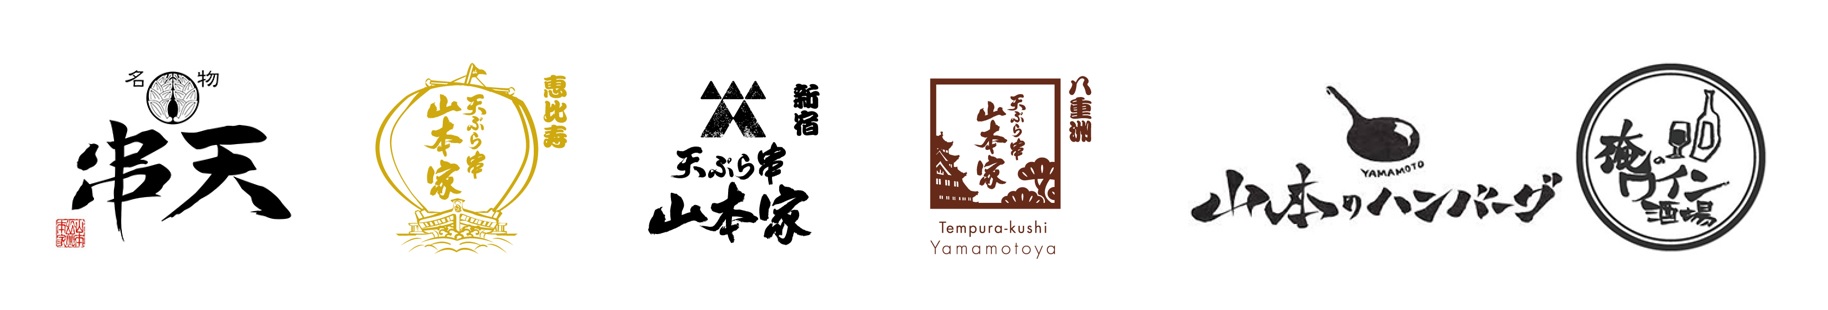 yaruki-company-brand